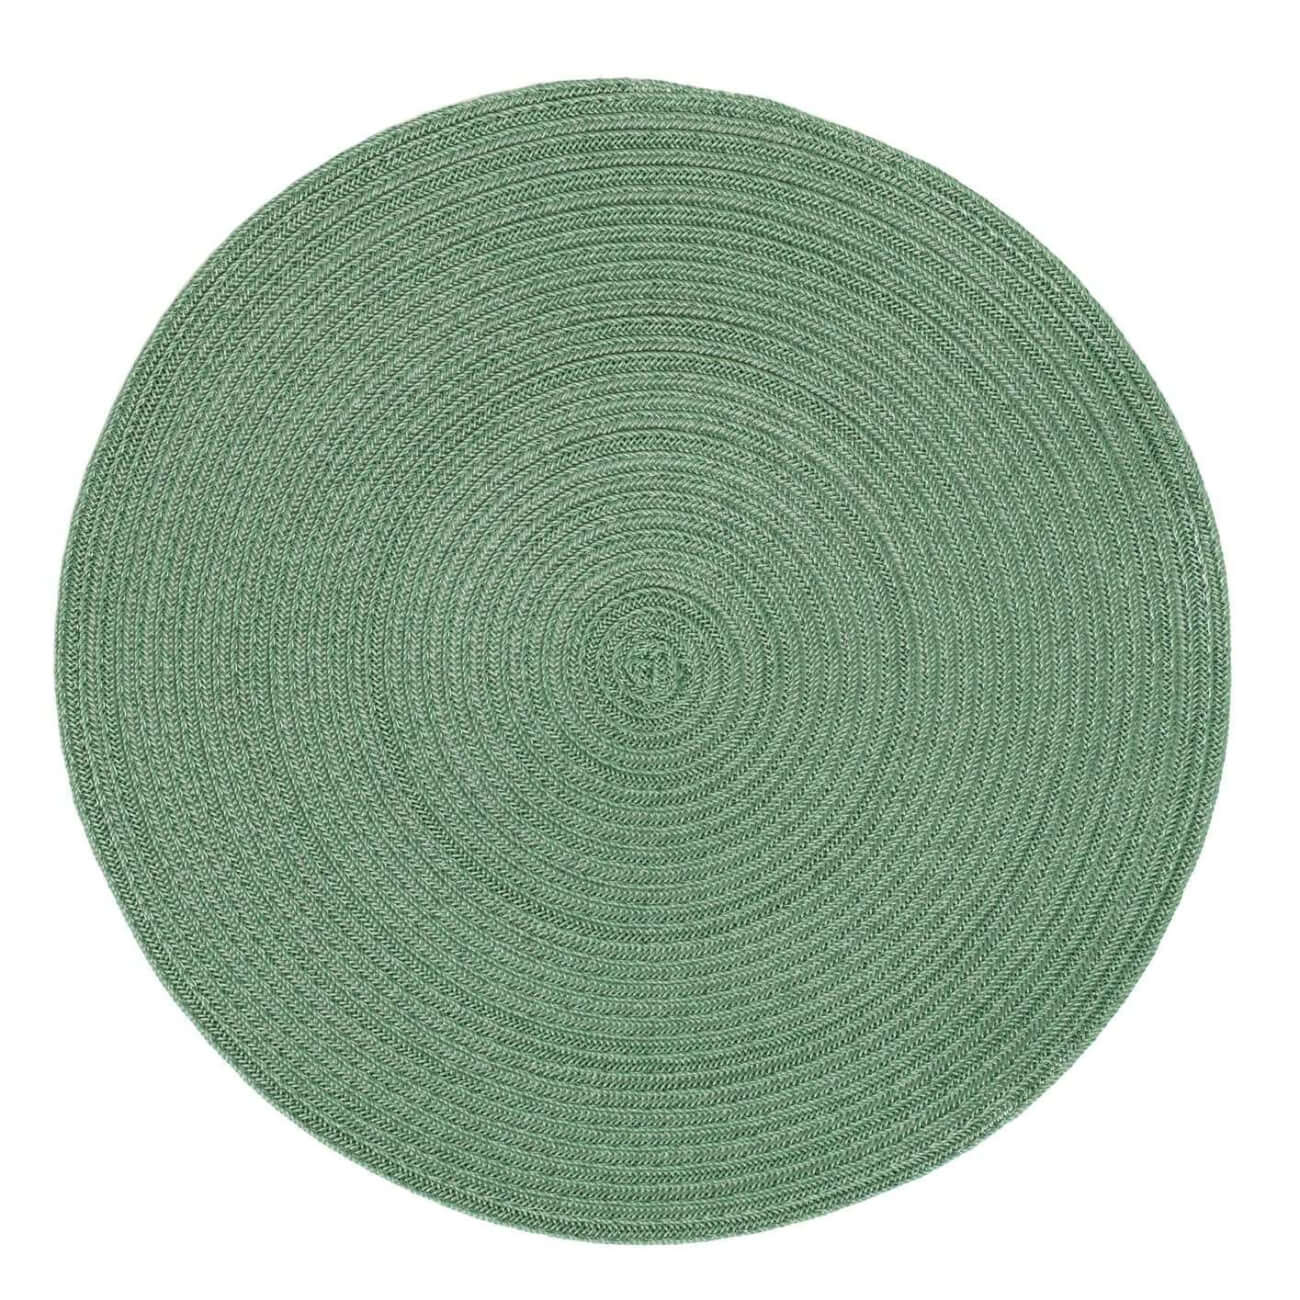 Салфетка под приборы, 38 см, полипропилен/ПЭТ, круглая, зеленая, Scintilla салфетка сервировочная полимер 45х30 см прямоугольная зеленая y3 1124